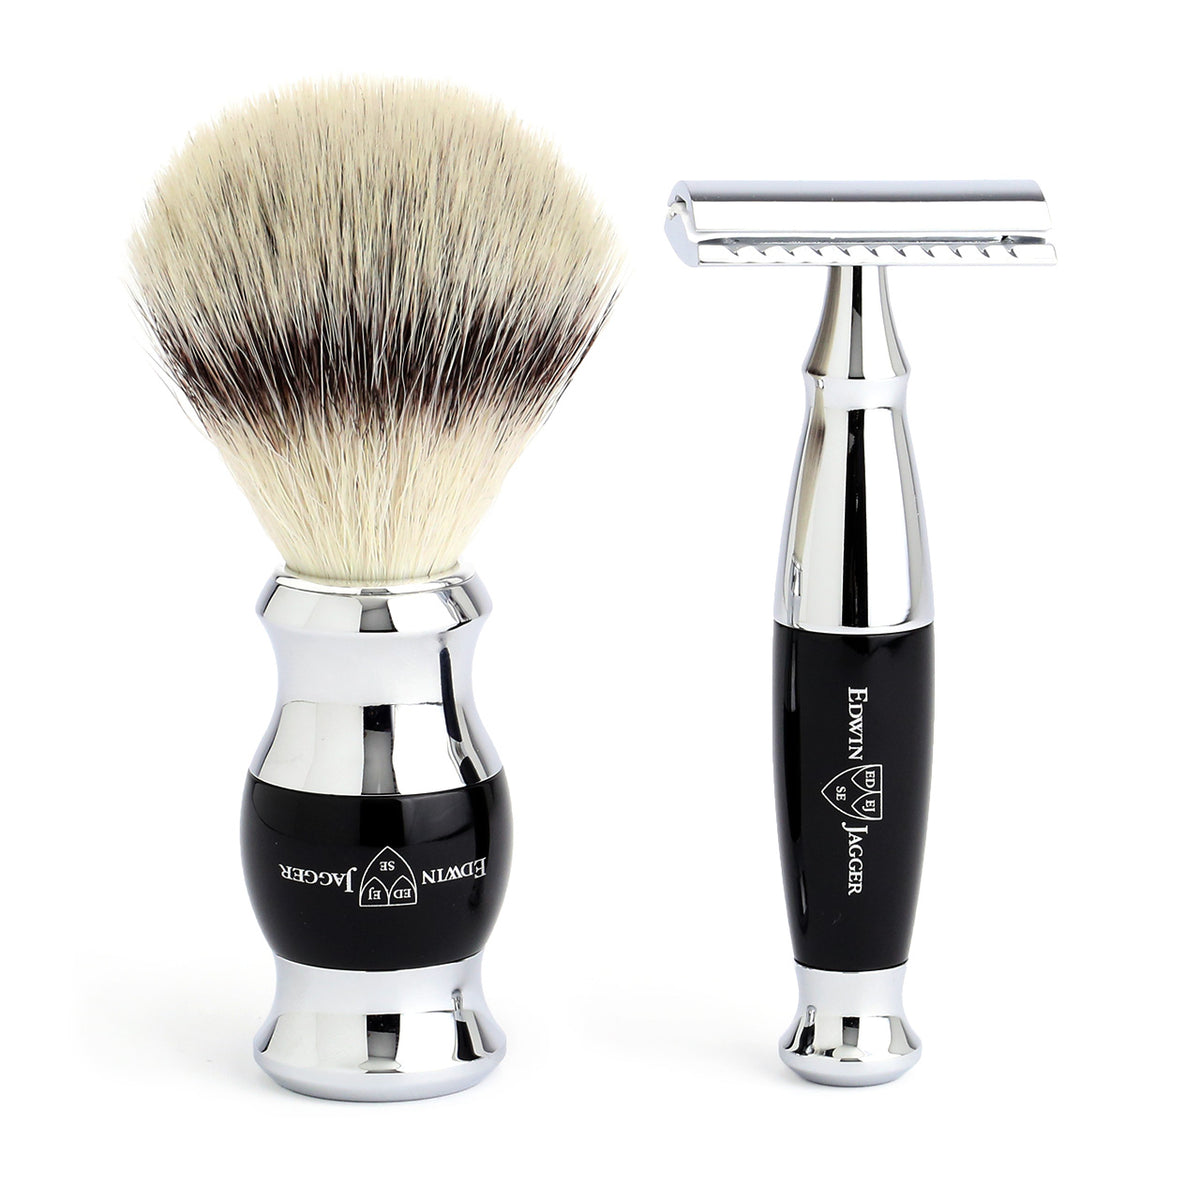 Imitation Ebony Safety Razor &amp; Shaving Brush